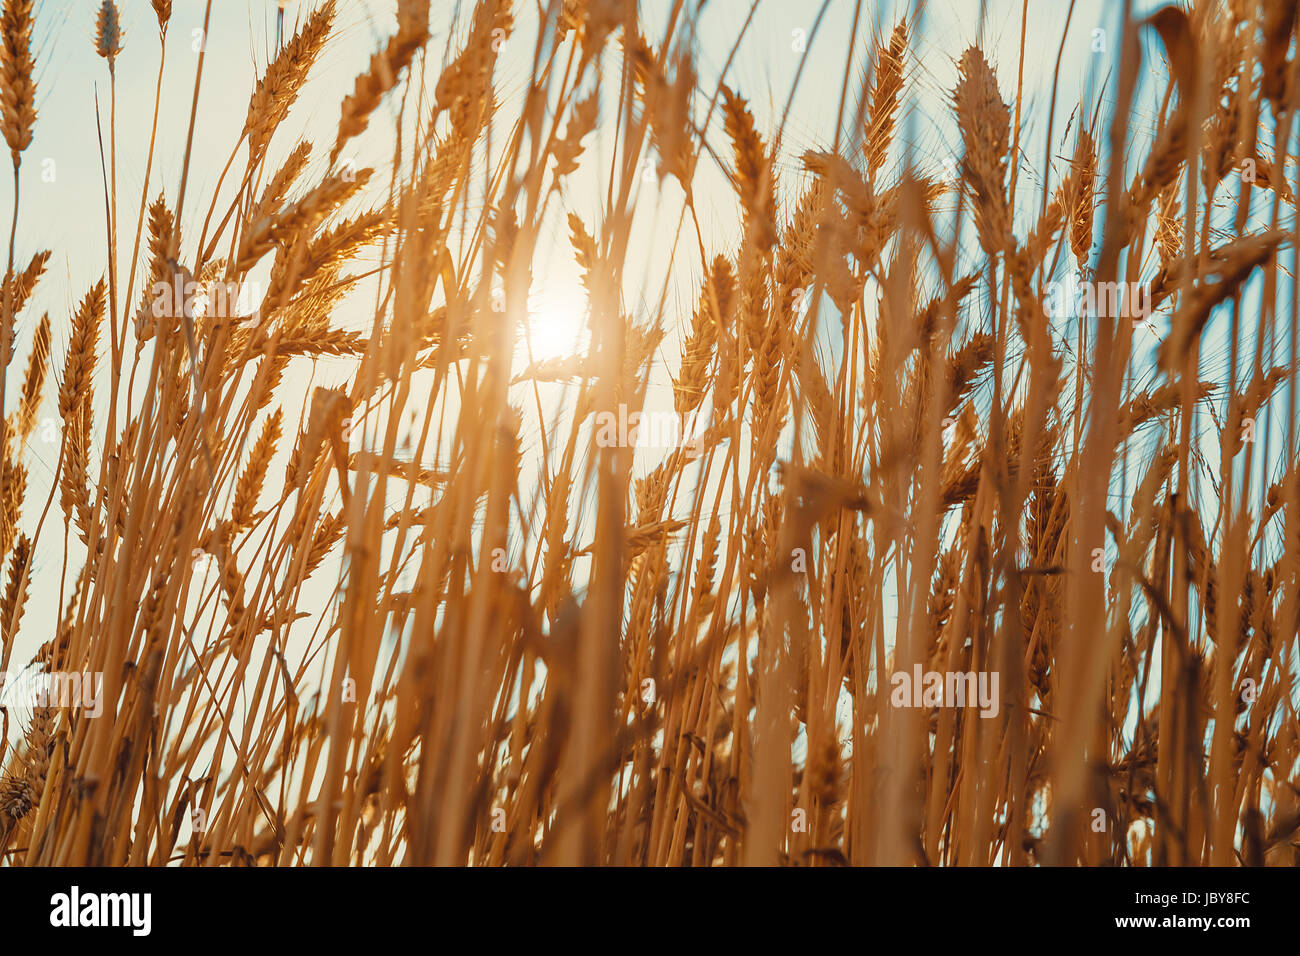 Champ de blé d'or. Une nature magnifique coucher de soleil paysage. contexte de la maturation des épis de blé meadow field. Banque D'Images